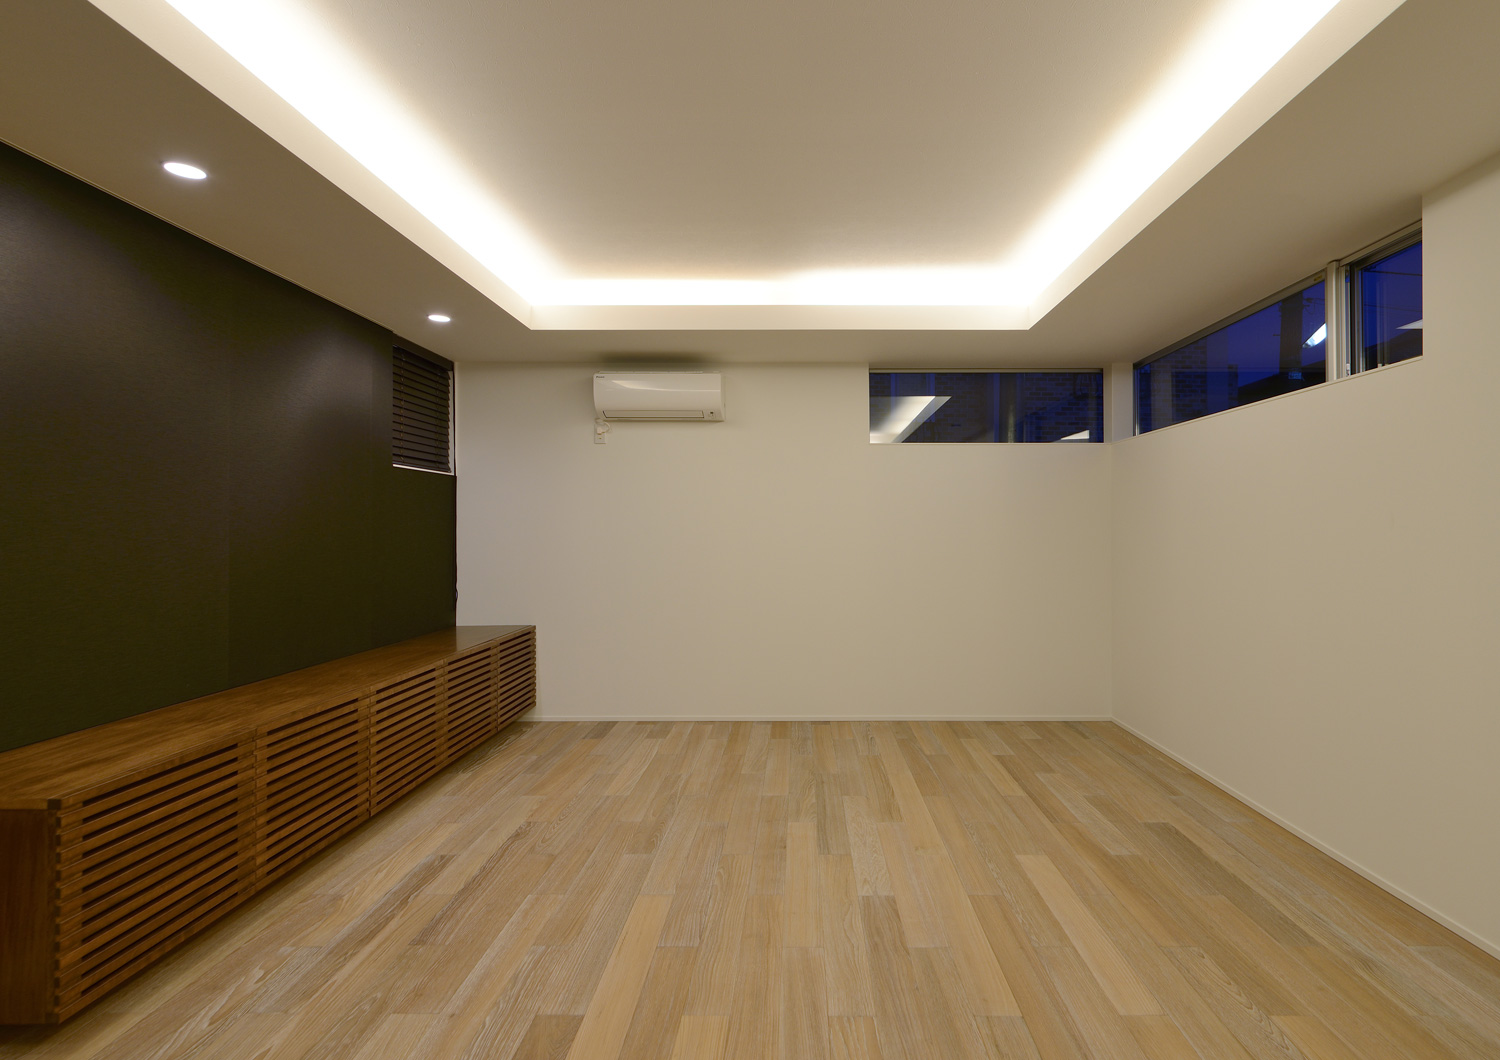 天井の段差を利用して間接照明を取り付けたスリット窓のあるLDK・デザイン住宅